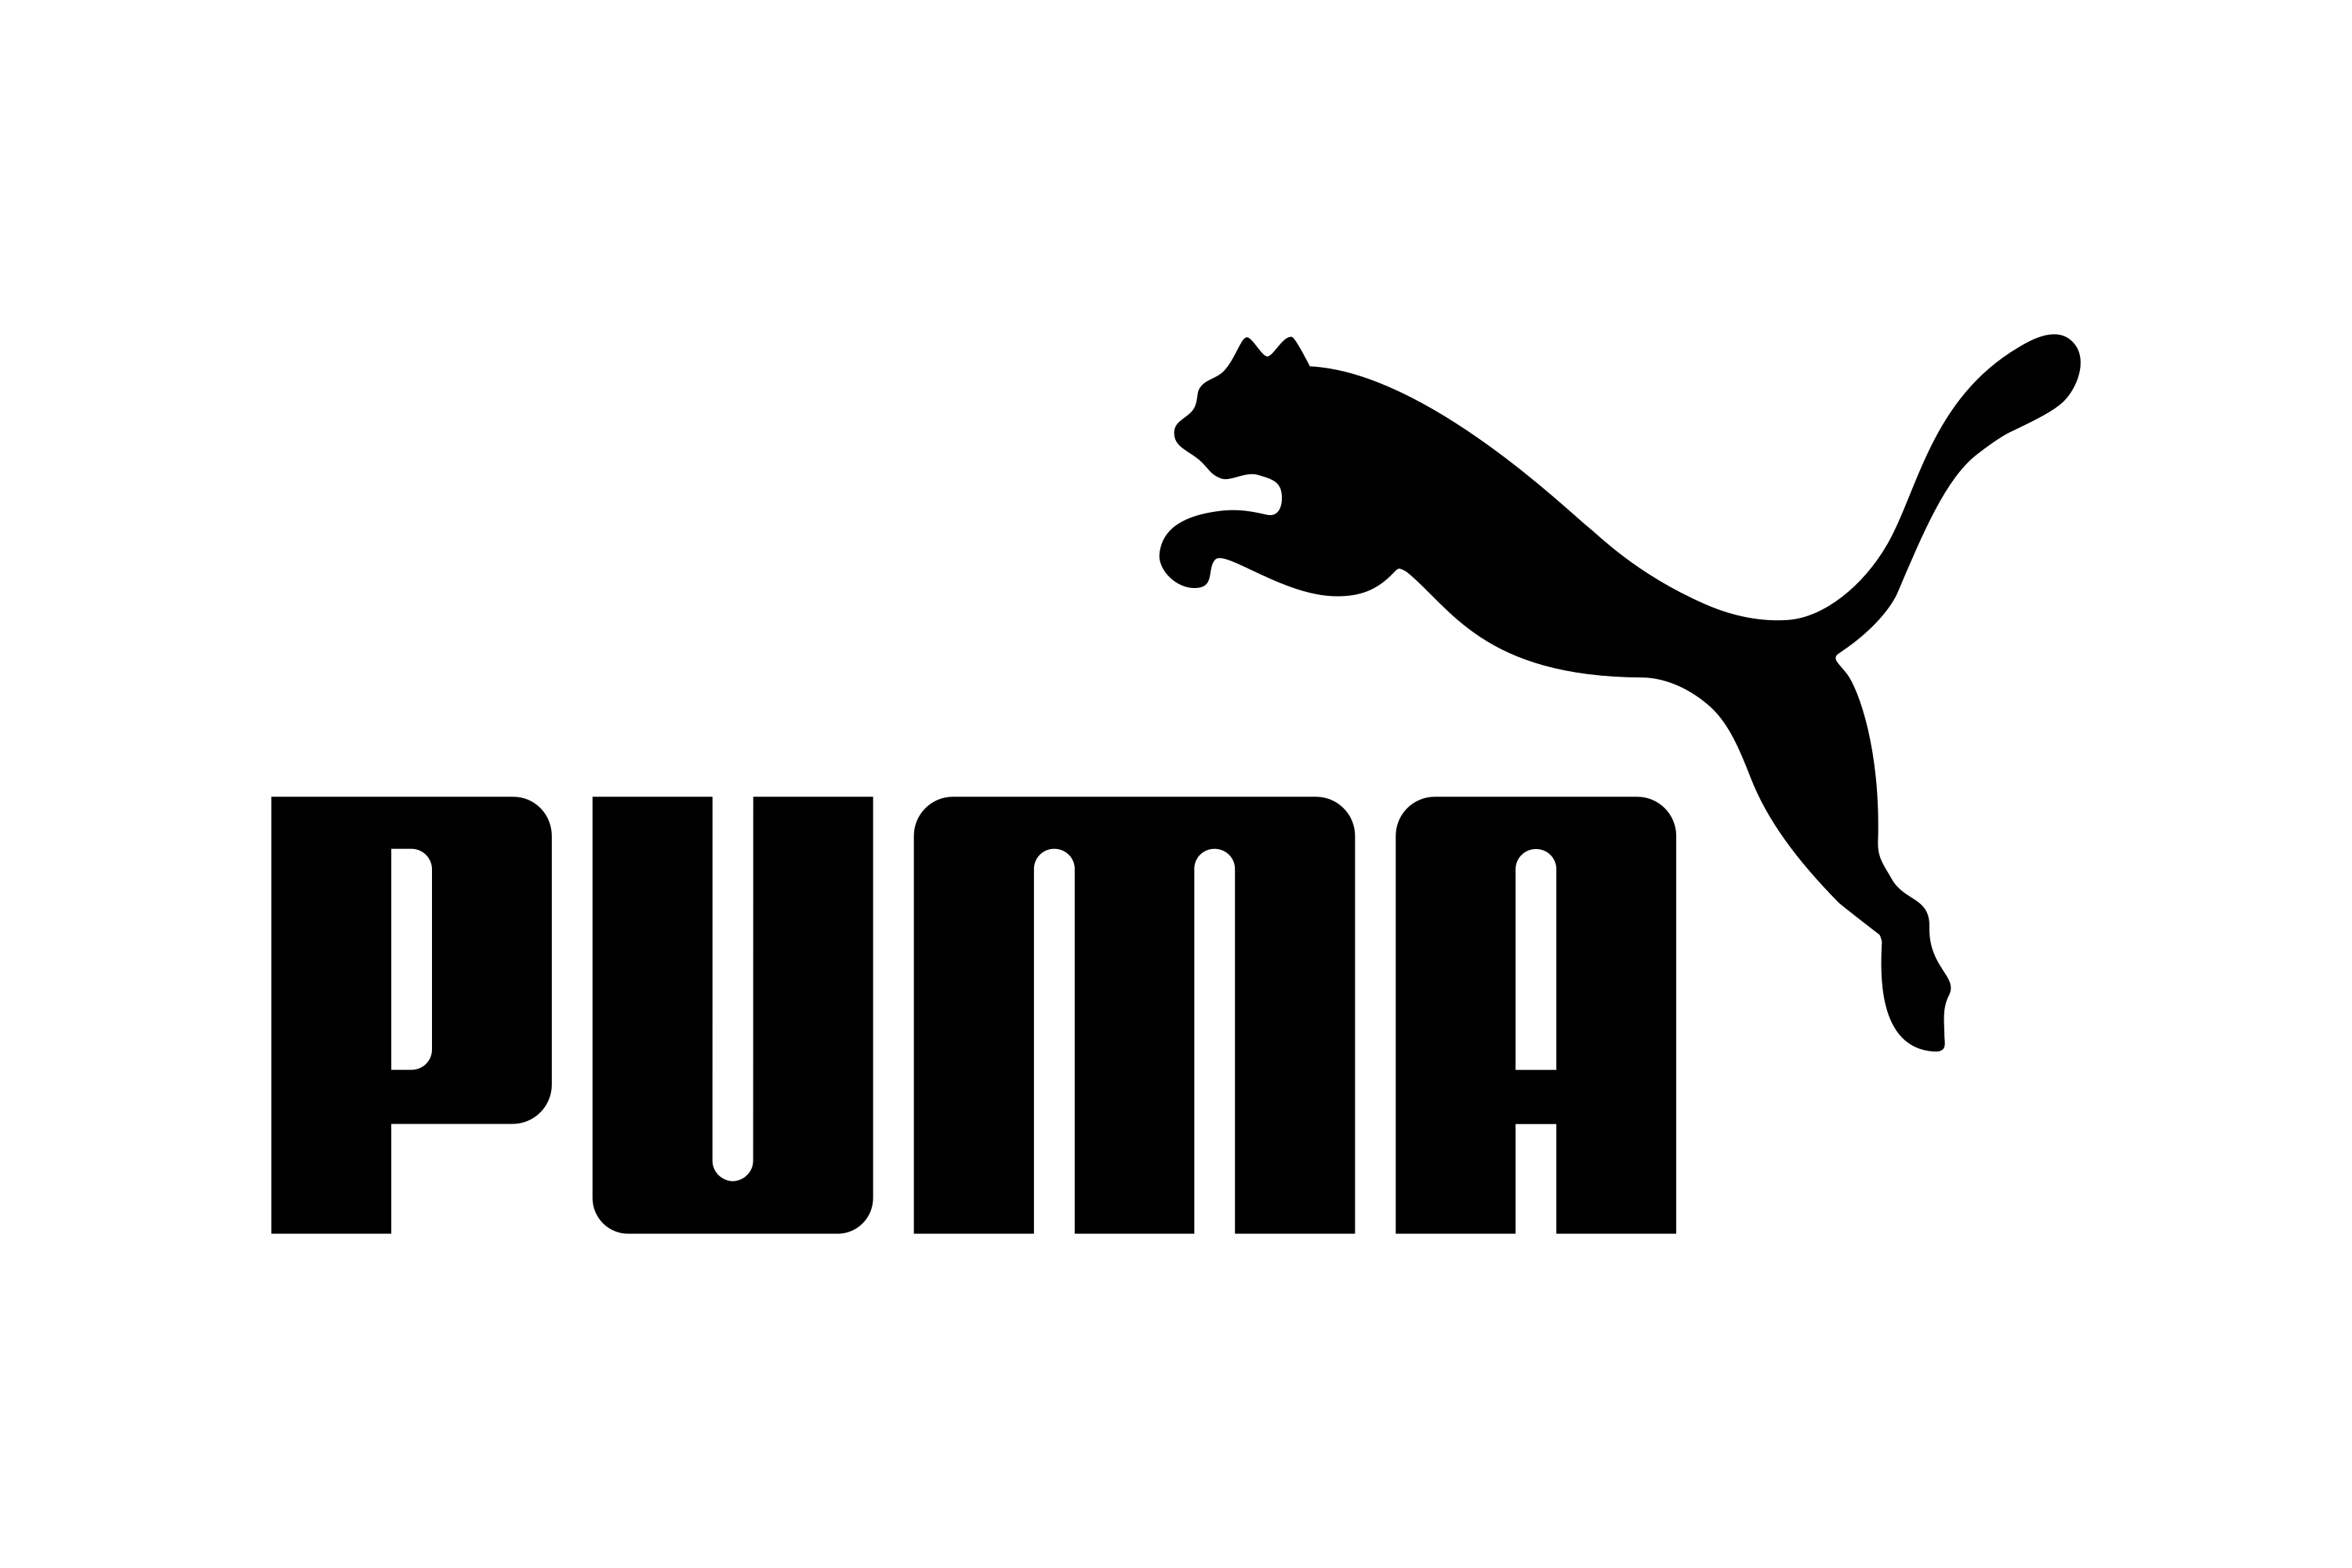 Download Puma SE Logo in SVG Vector or PNG File Format - Logo.wine